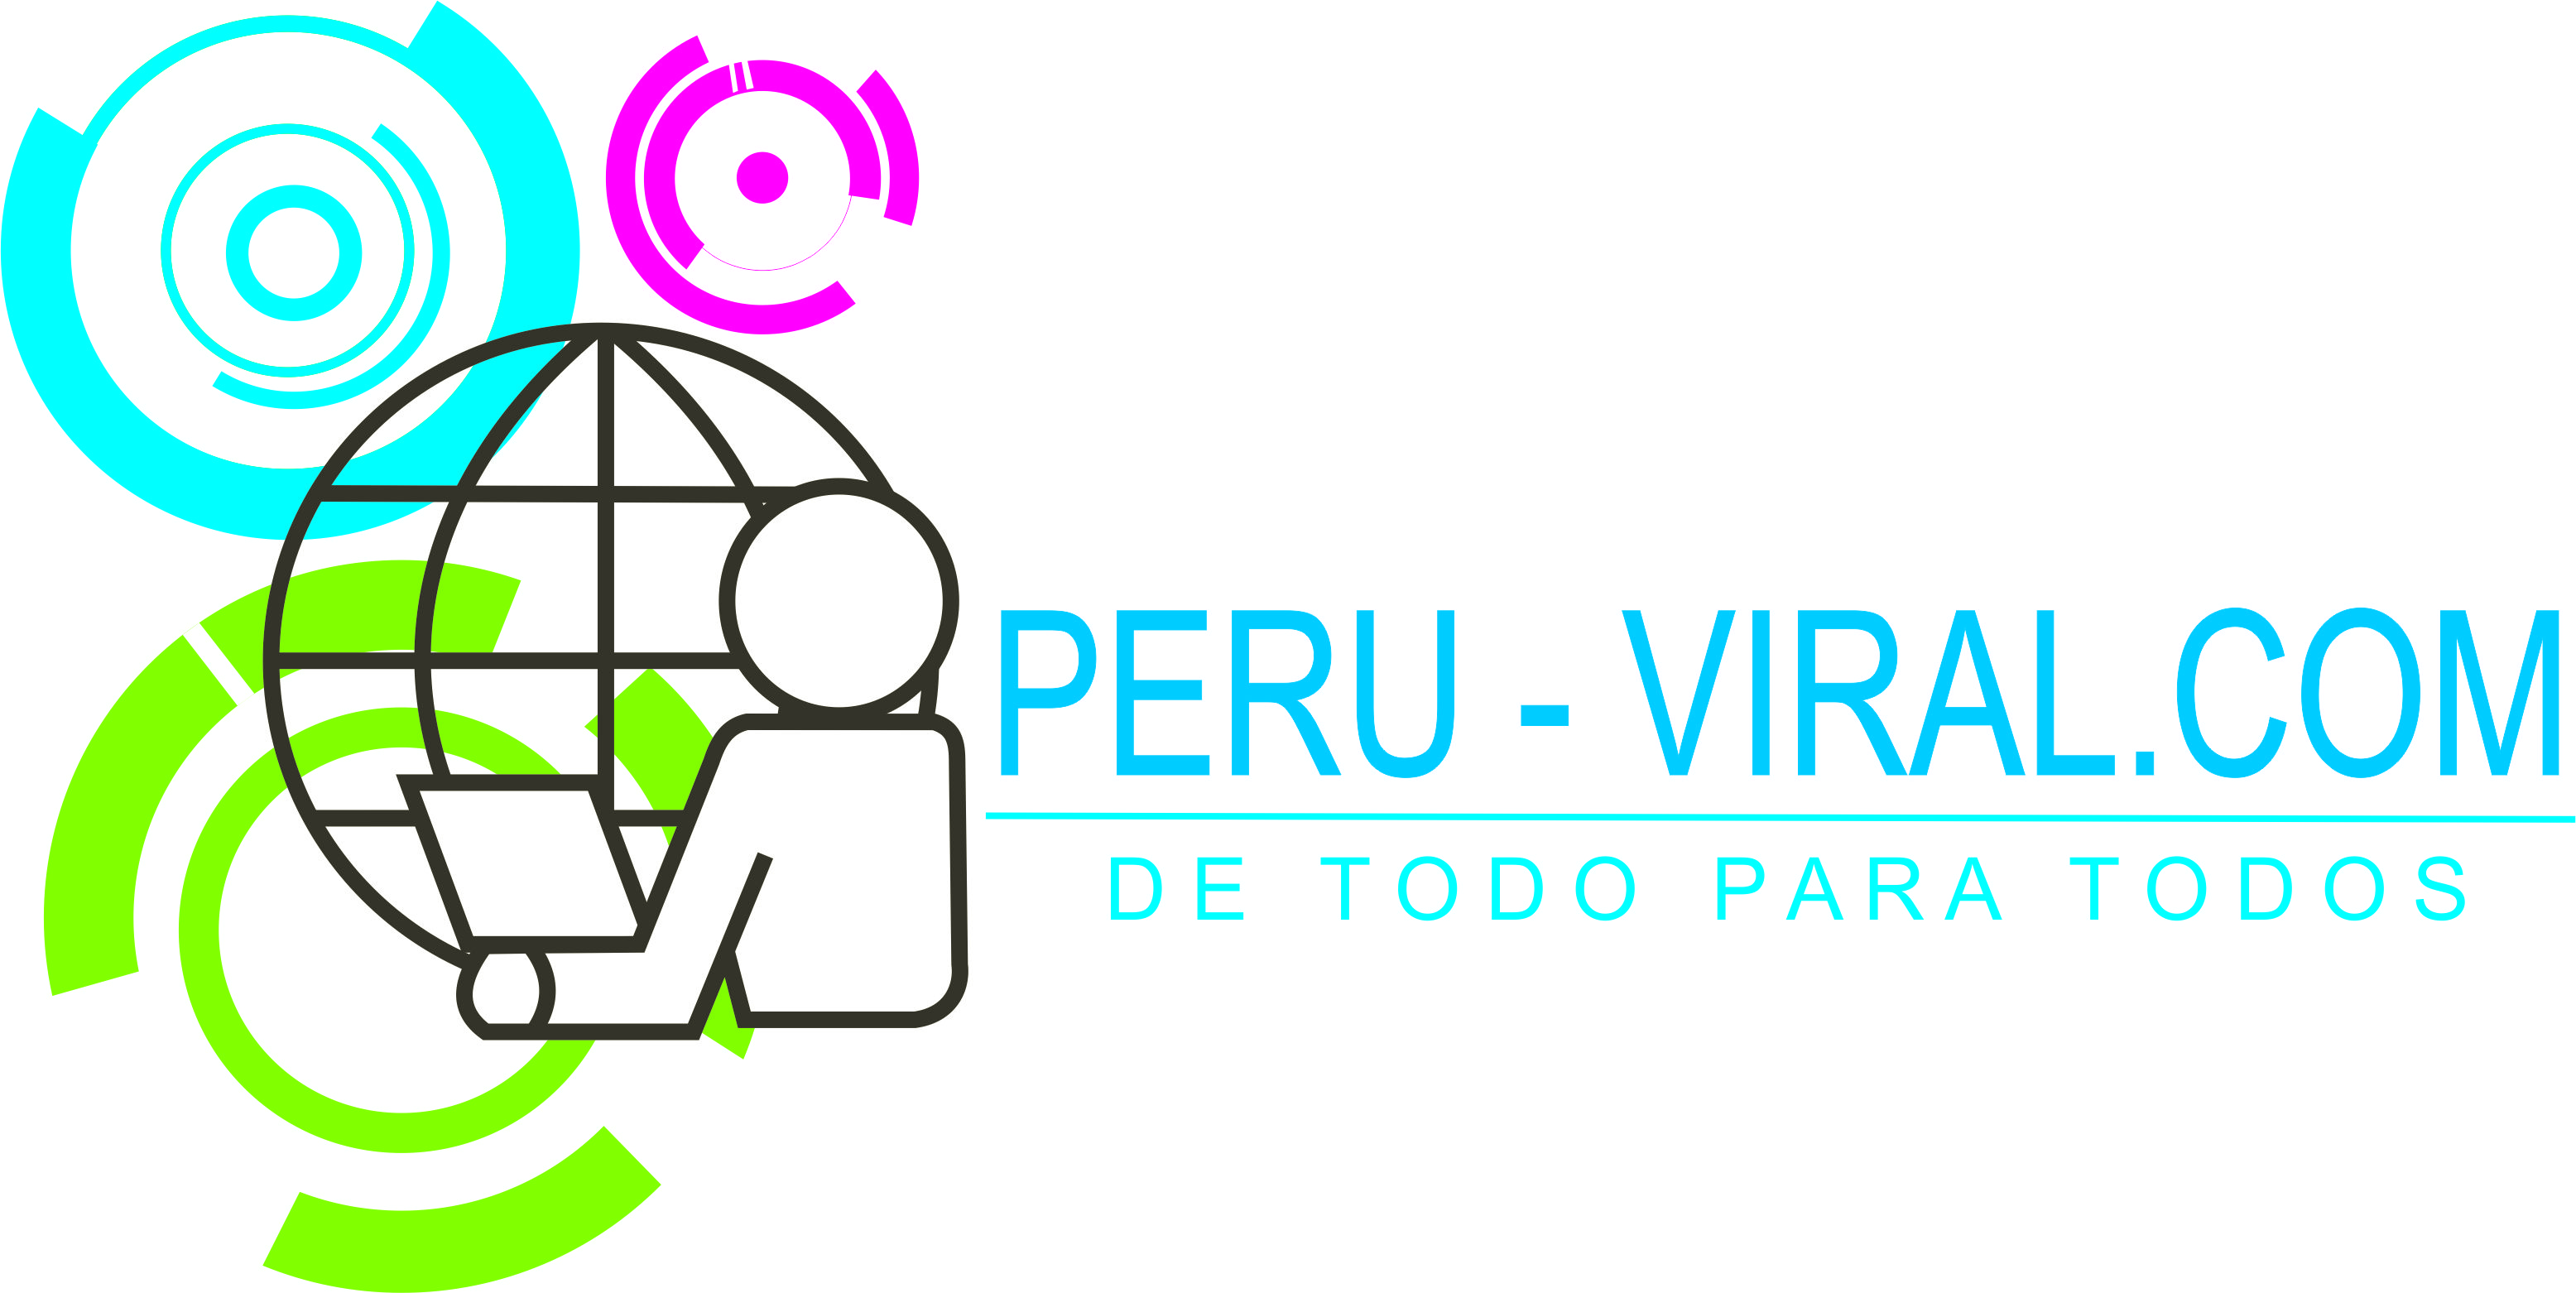 Peru-viral desde Villa